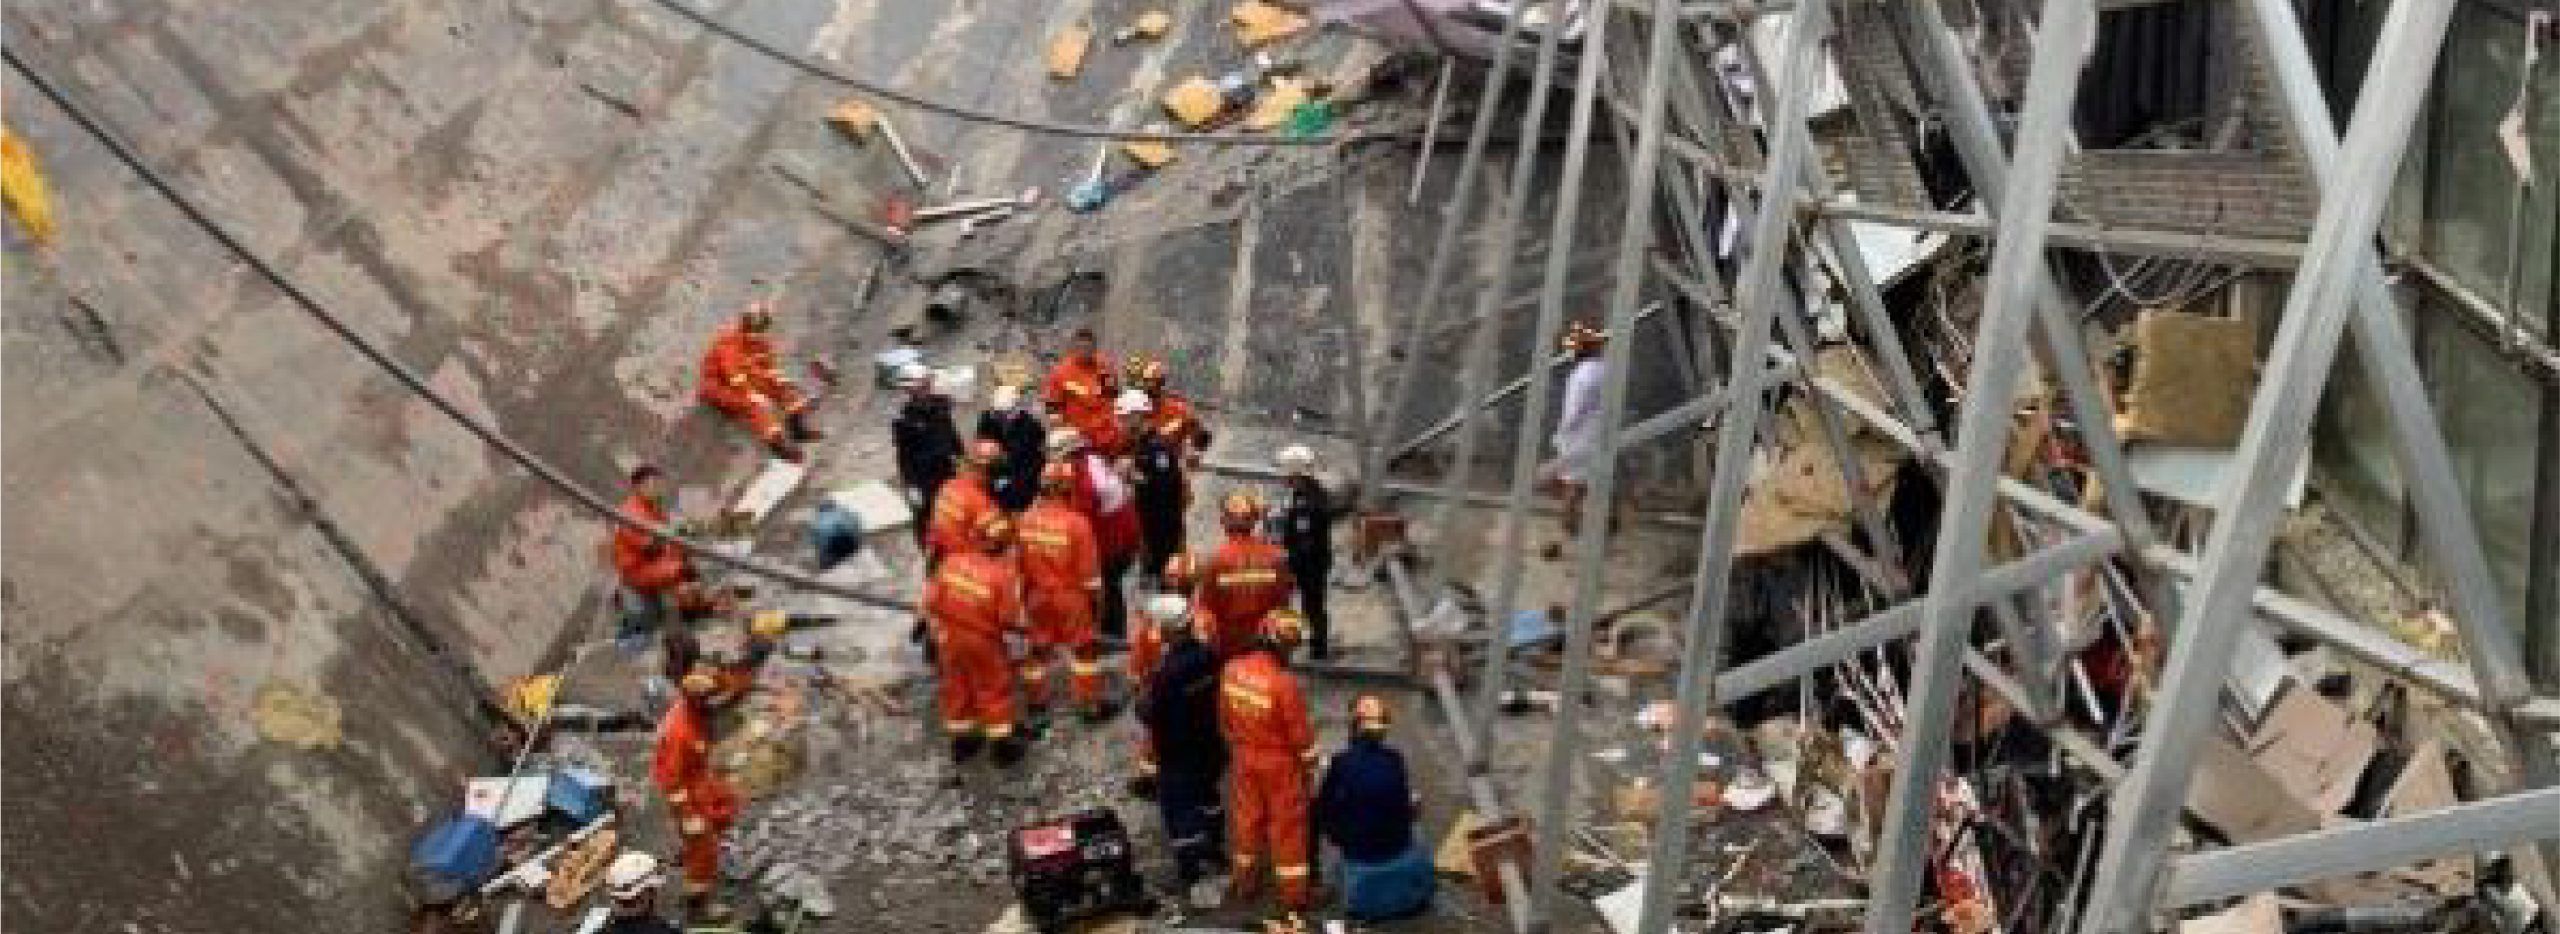 上海坍塌建筑搜救工作已基本结束 10人死亡15人受伤|受伤|死亡|建筑_新浪新闻